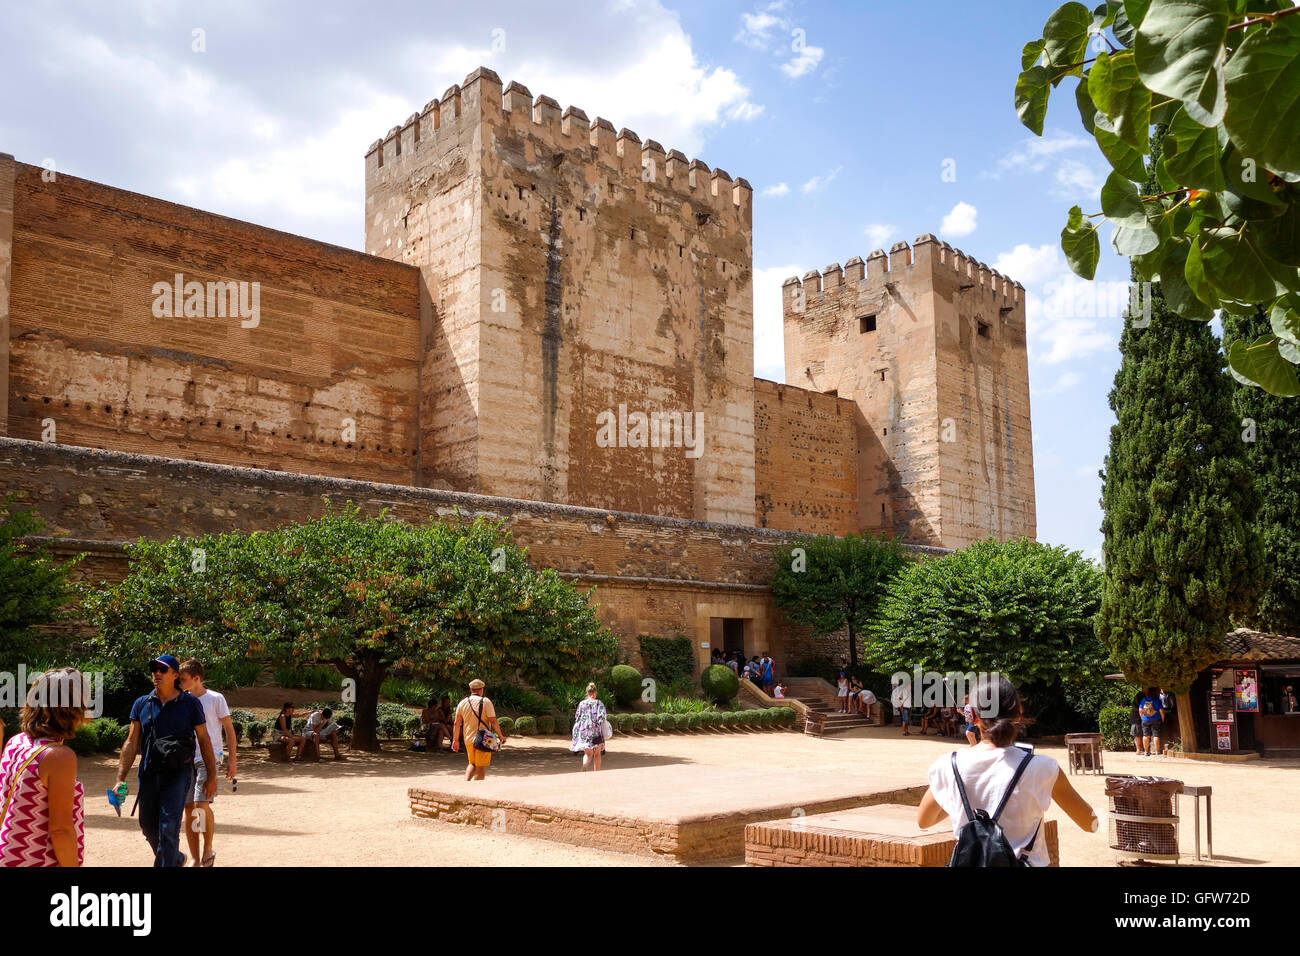 Entrée de la forteresse Alcazaba de l'Alhambra, Alhambra de Granada, Andalousie, espagne. Banque D'Images